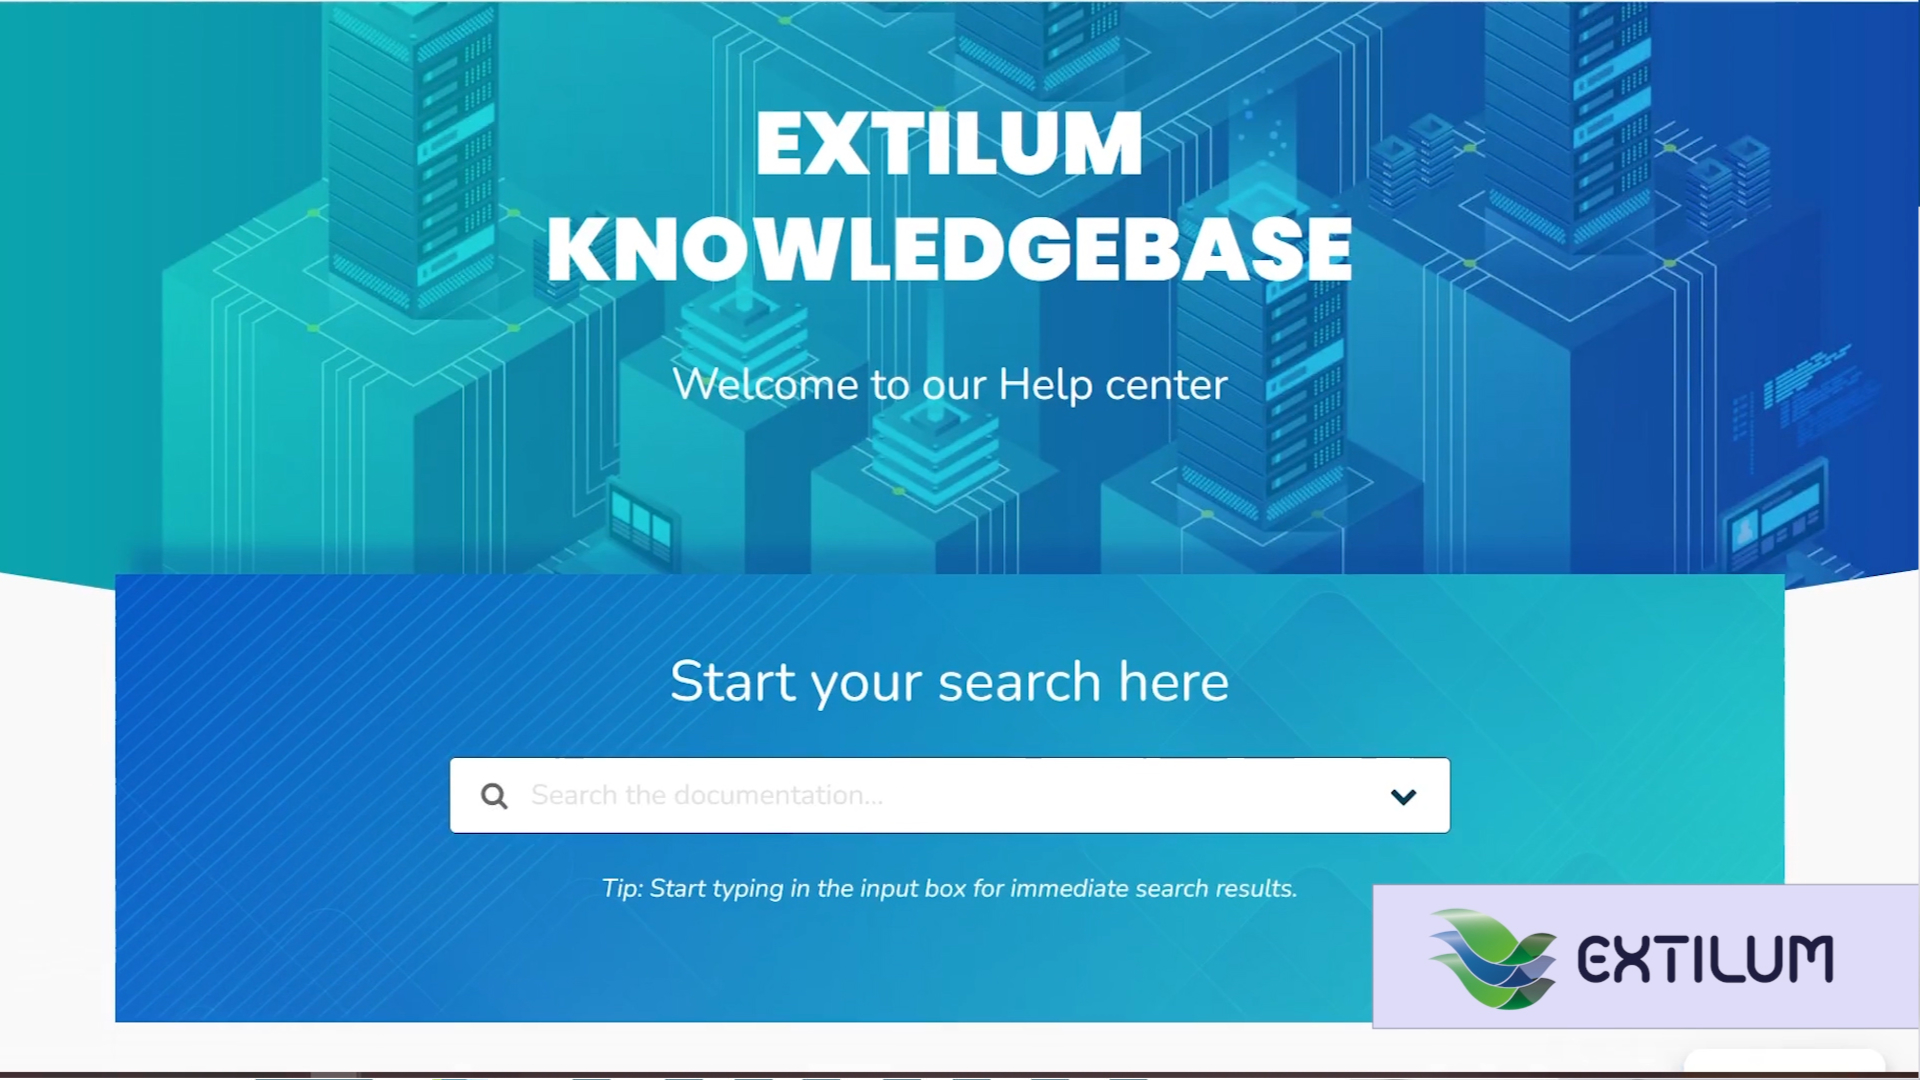 Extilum Knowledge Base Article Elements